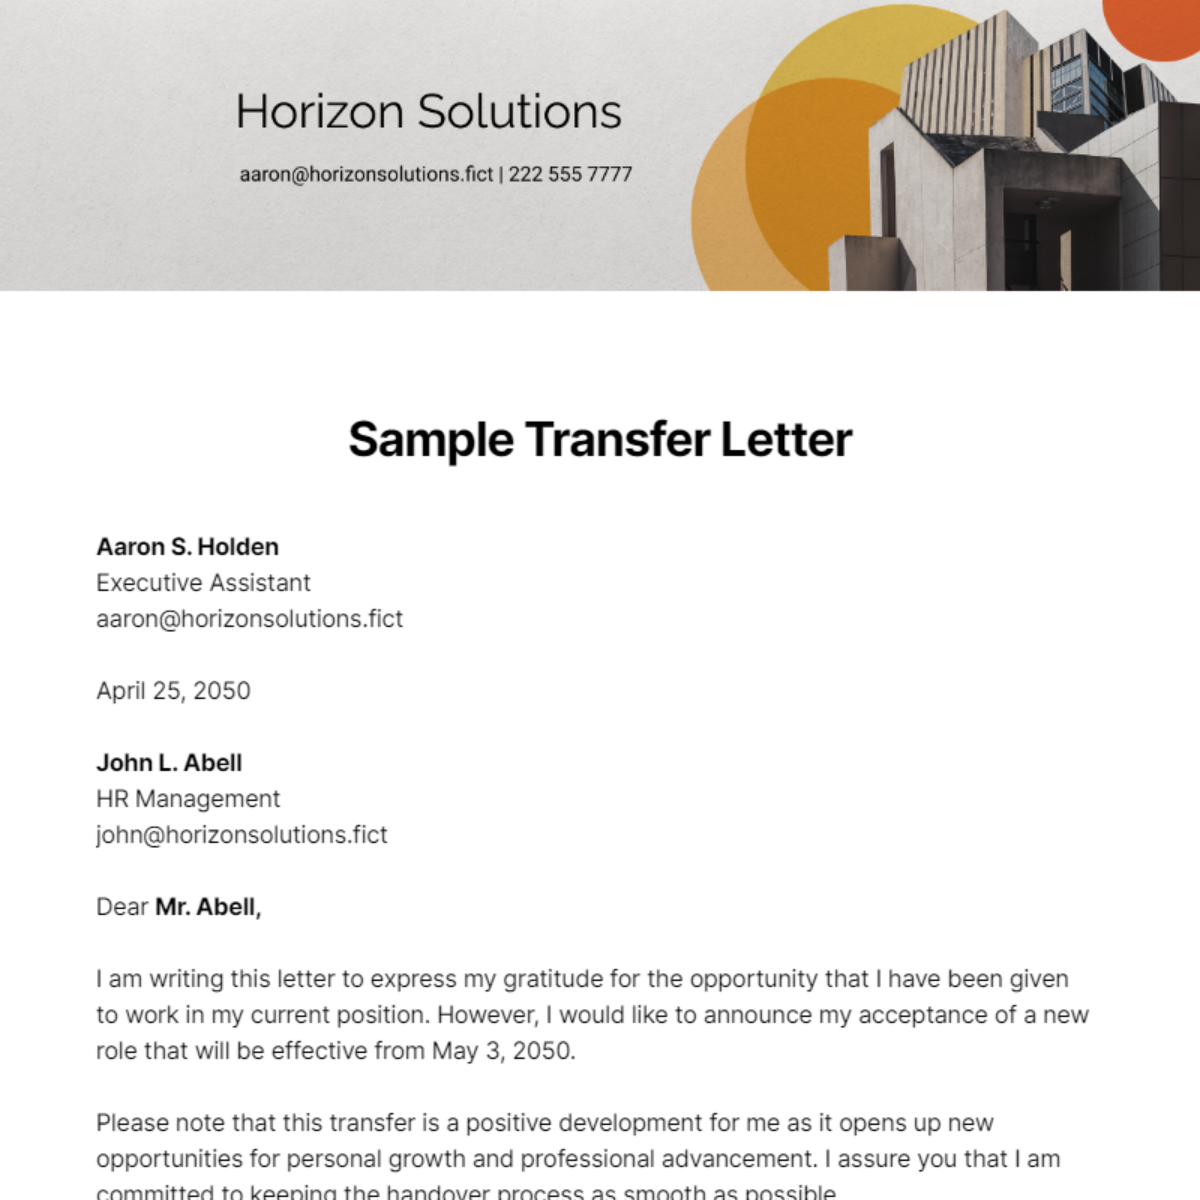 Sample Transfer Letter Template